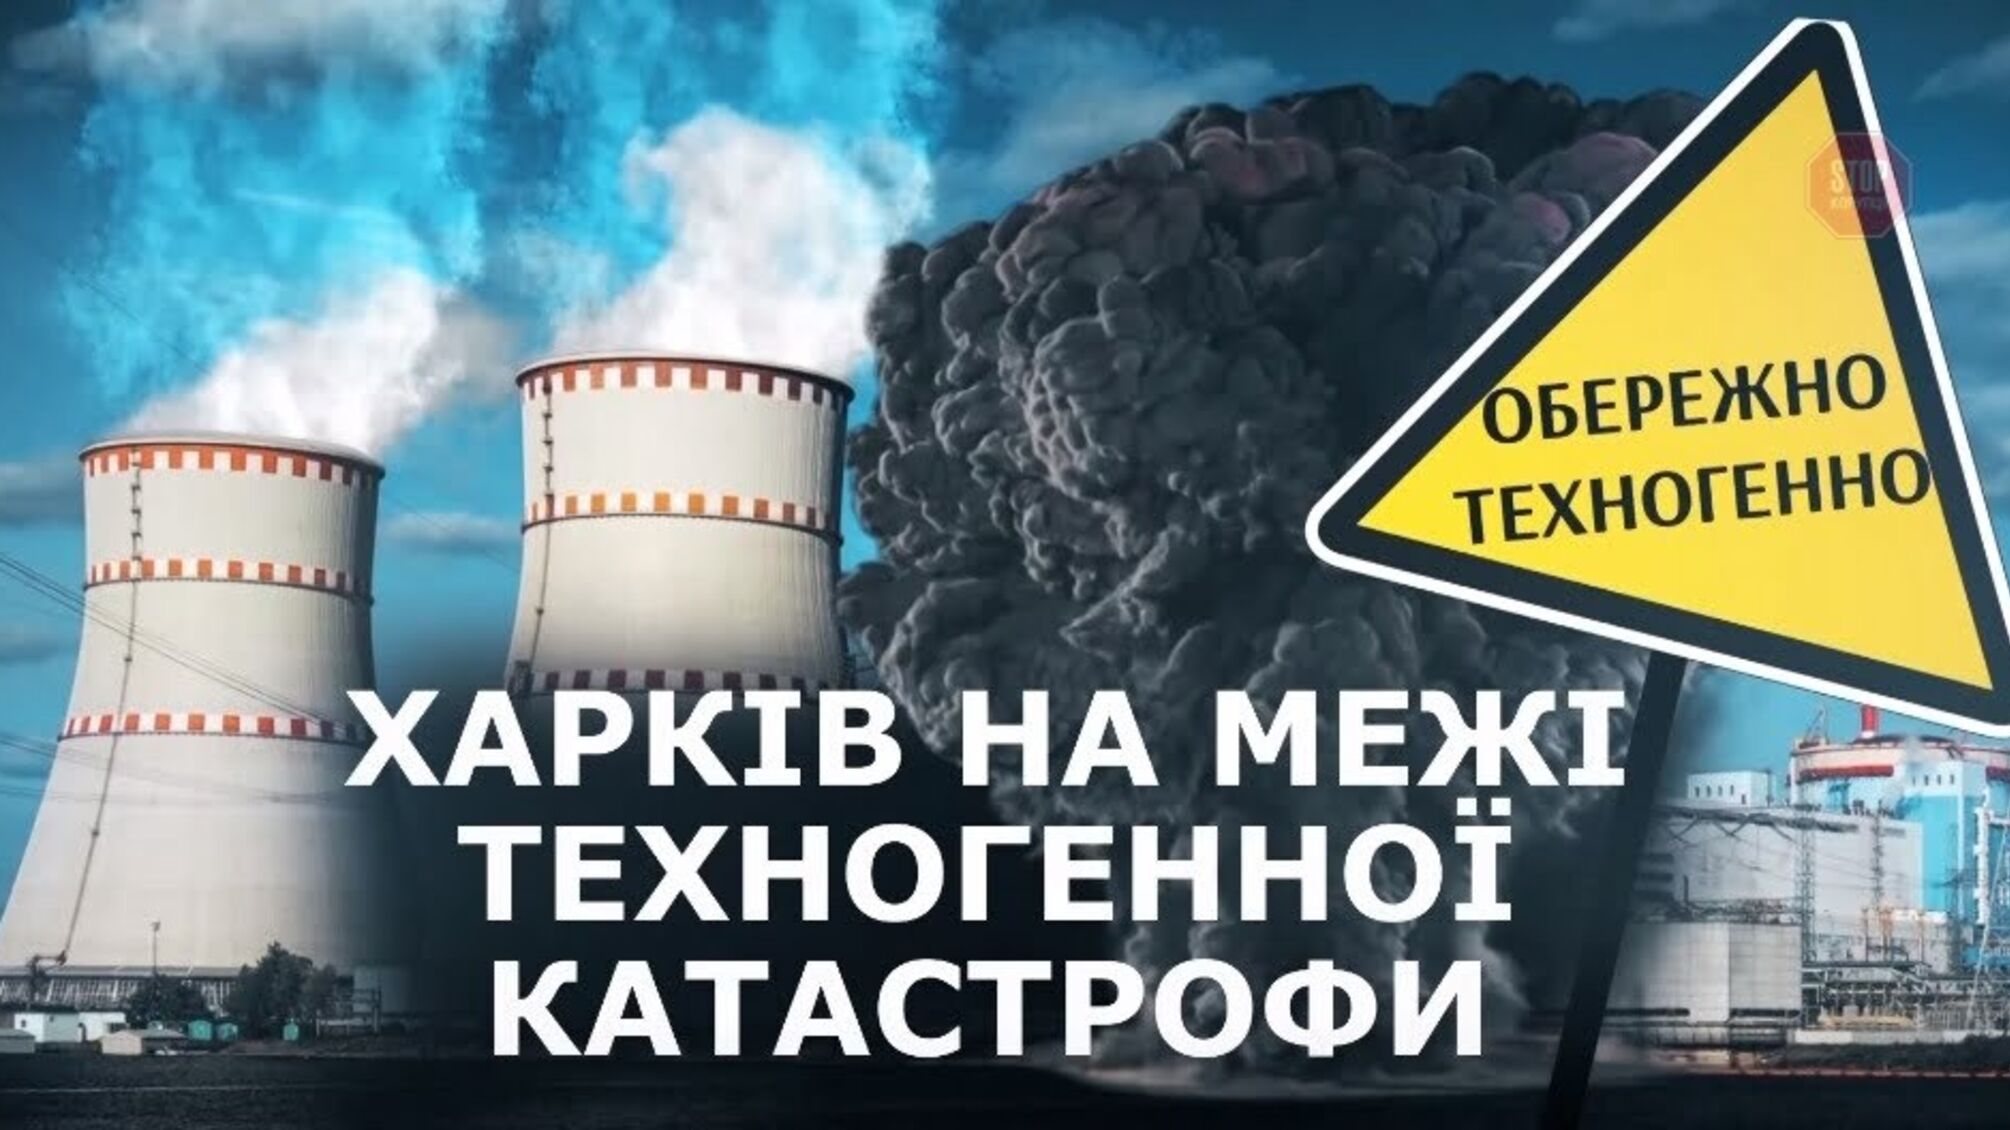 Безпаливна афера: через блокування роботи коксохімічного заводу Харків опинився на межі техногенної катастрофи